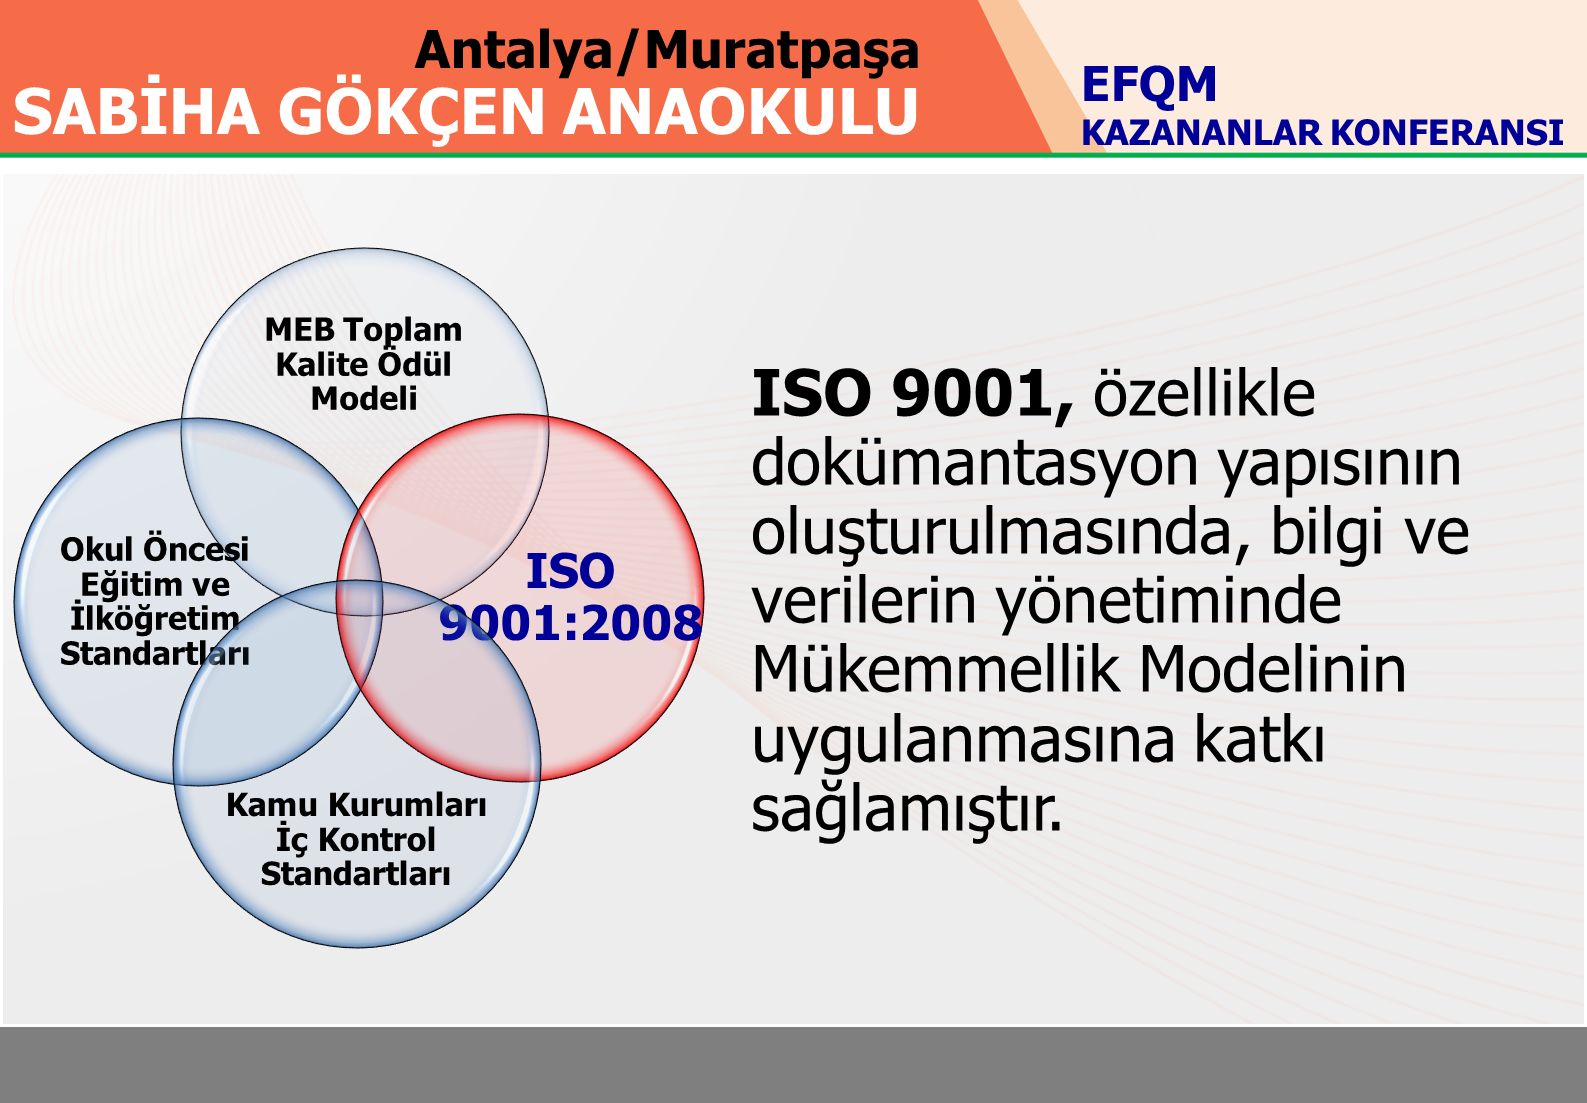 Antalya/Muratpaşa SABİHA GÖKÇEN ANAOKULU MEB Toplam Kalite Ödül Modeli Okul Öncesi Eğitim ve İlköğretim Standartları ISO 9001:2008 Kamu Kurumları İç Kontrol Standartları EFQM KAZANANLAR KONFERANSI ISO 9001, özellikle dokümantasyon yapısının oluşturulmasında, bilgi ve verilerin yönetiminde Mükemmellik Modelinin uygulanmasına katkı sağlamıştır.